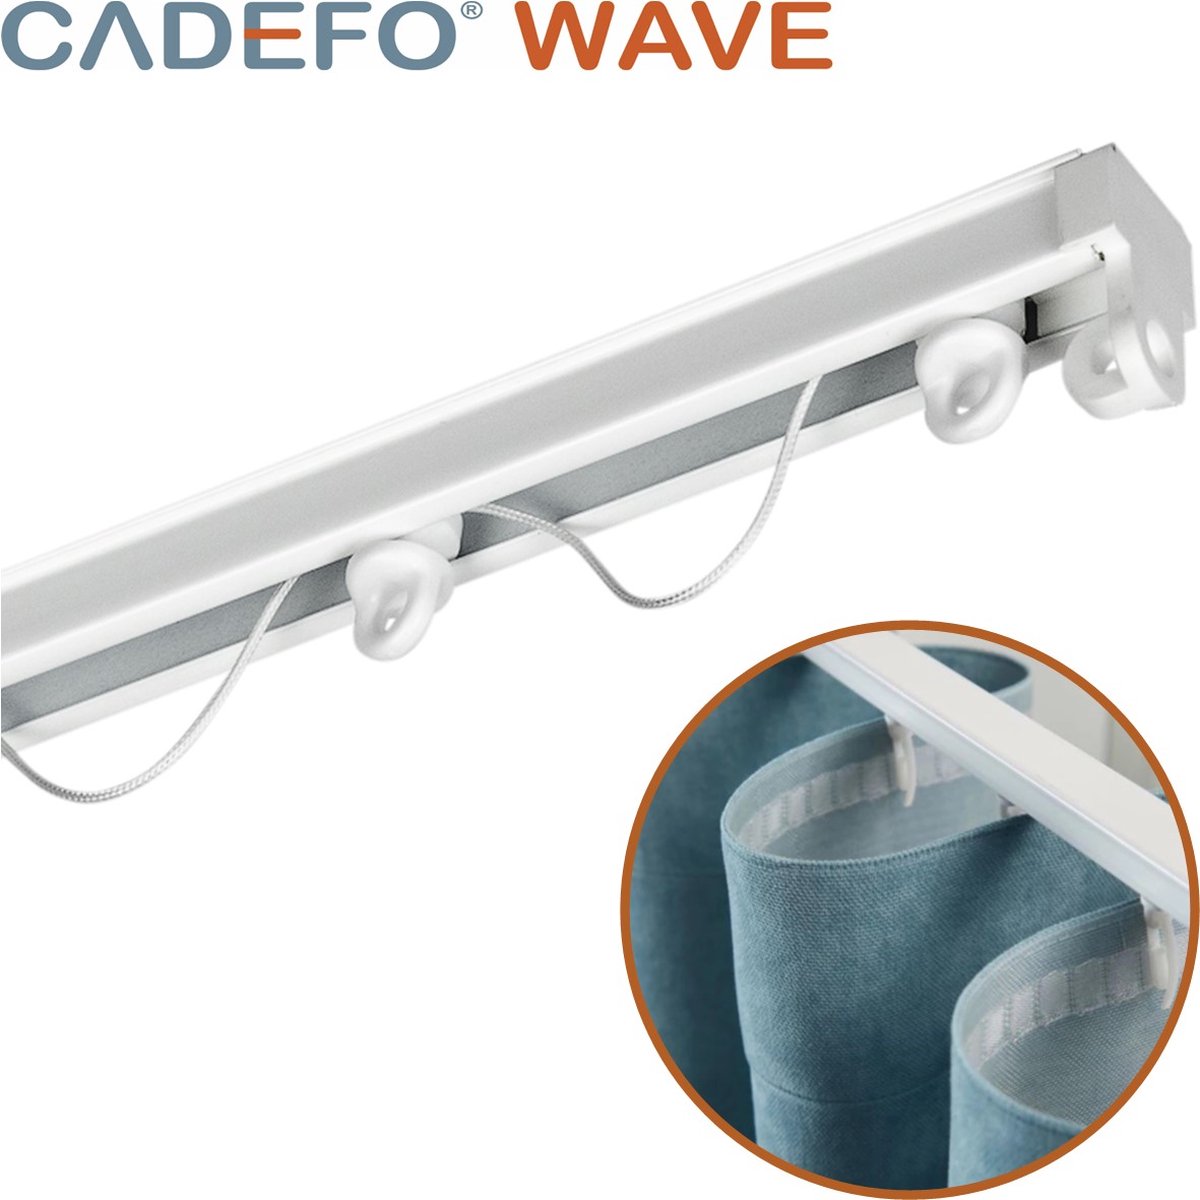 CADEFO WAVE (151 - 200 cm) Gordijnrails - Compleet op maat! - UIT 1 STUK - Leverbaar tot 6 meter - Plafondbevestiging - Lengte 167 cm